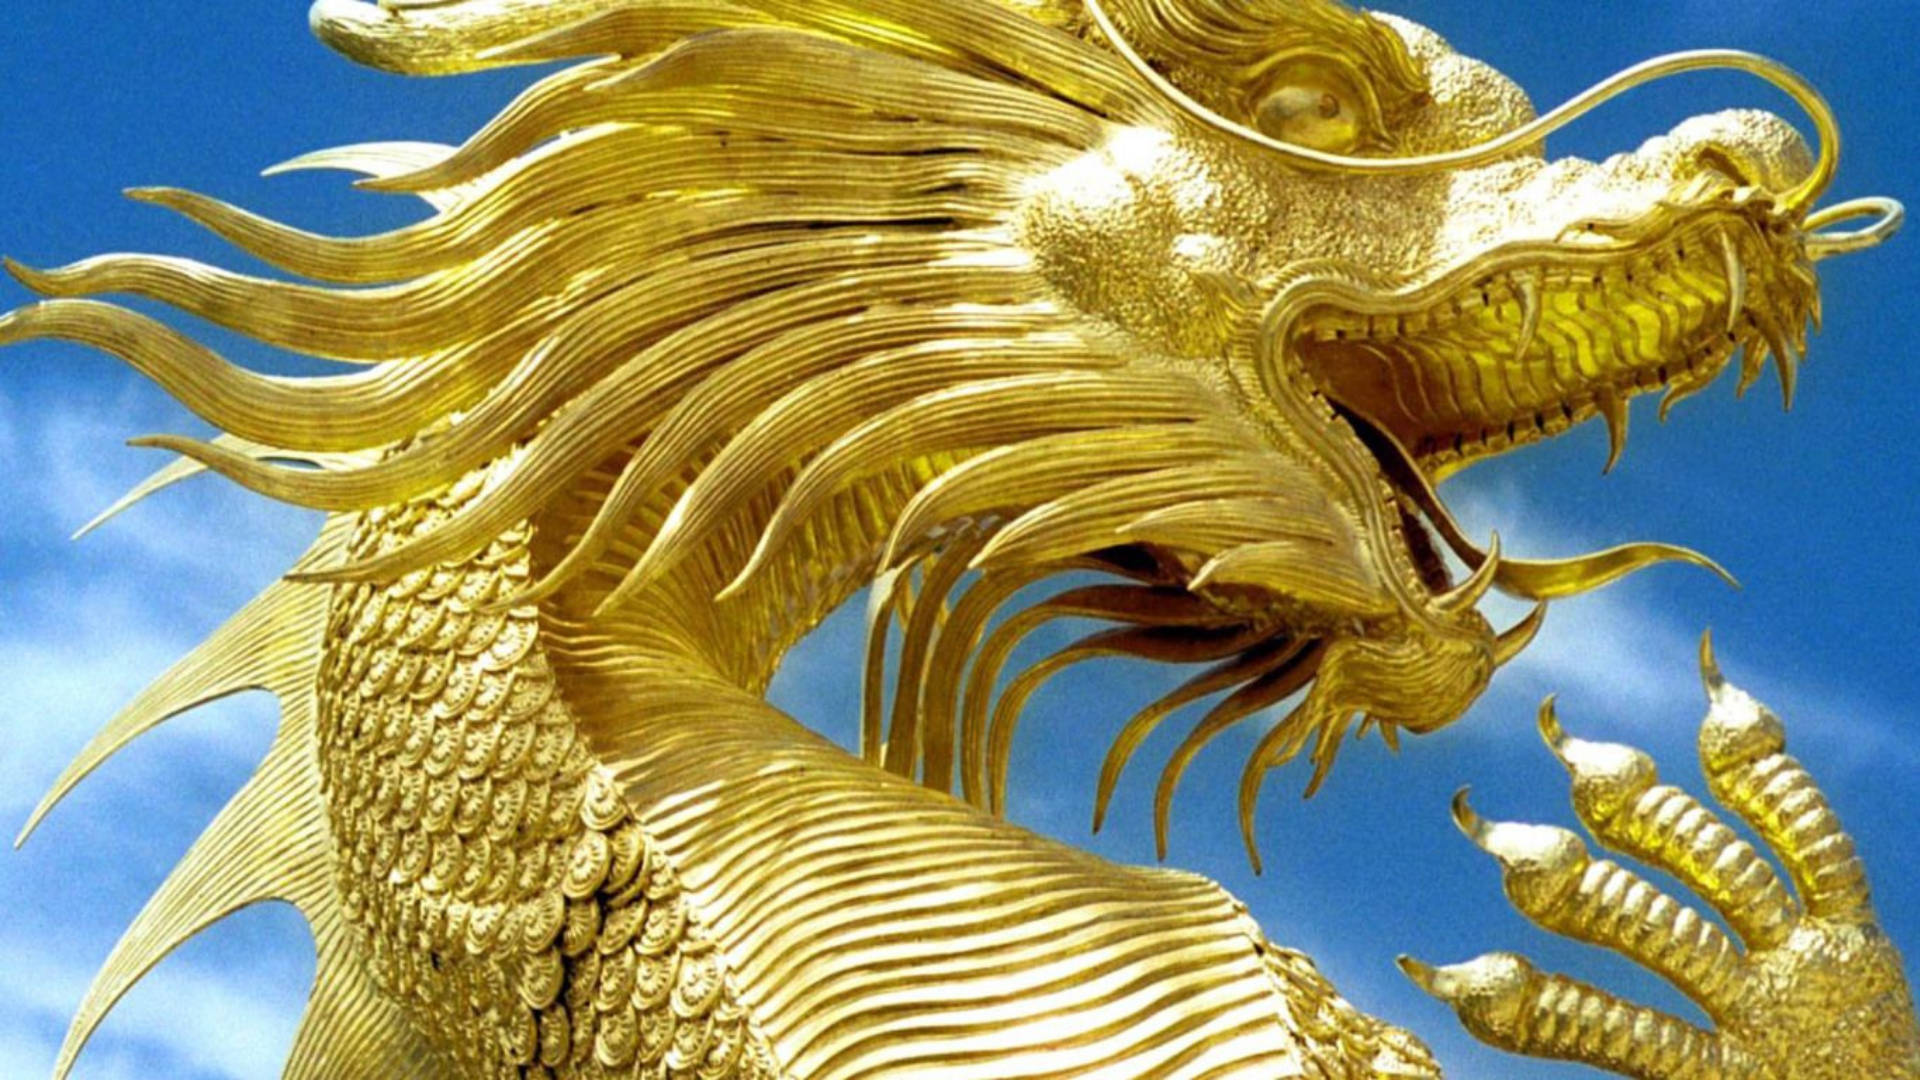 Golden Dragon Background Photos